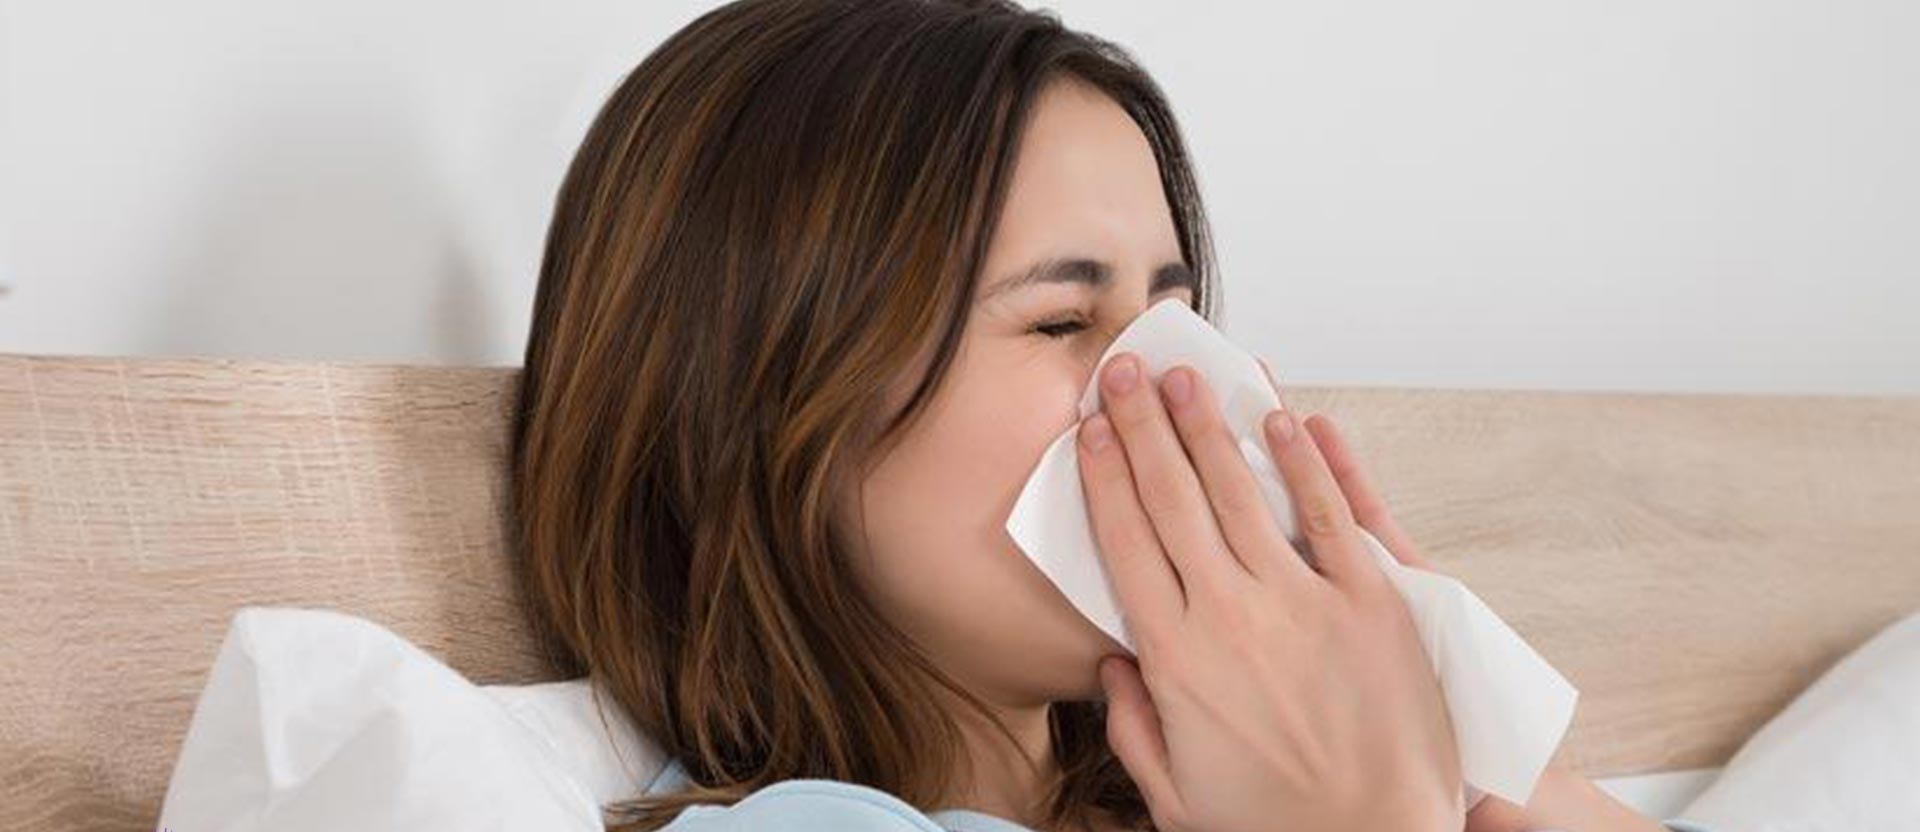 سرماخوردگی - تفاوت سرماخوردگی و آنفولانزا